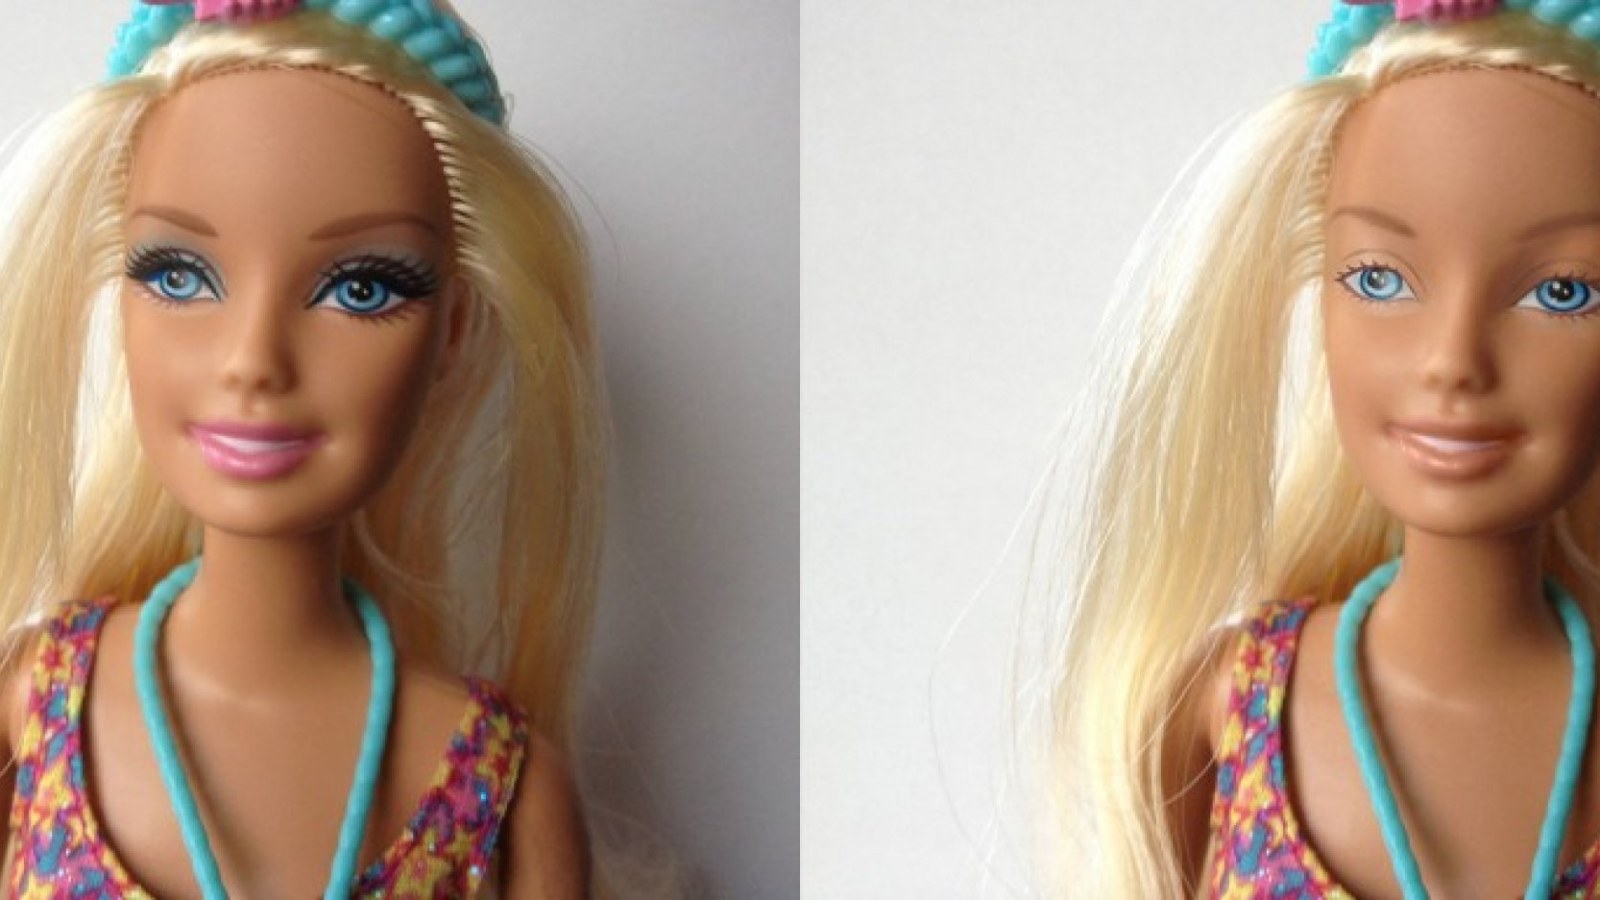 Barbie Without Makeup Nickolay Lamm S